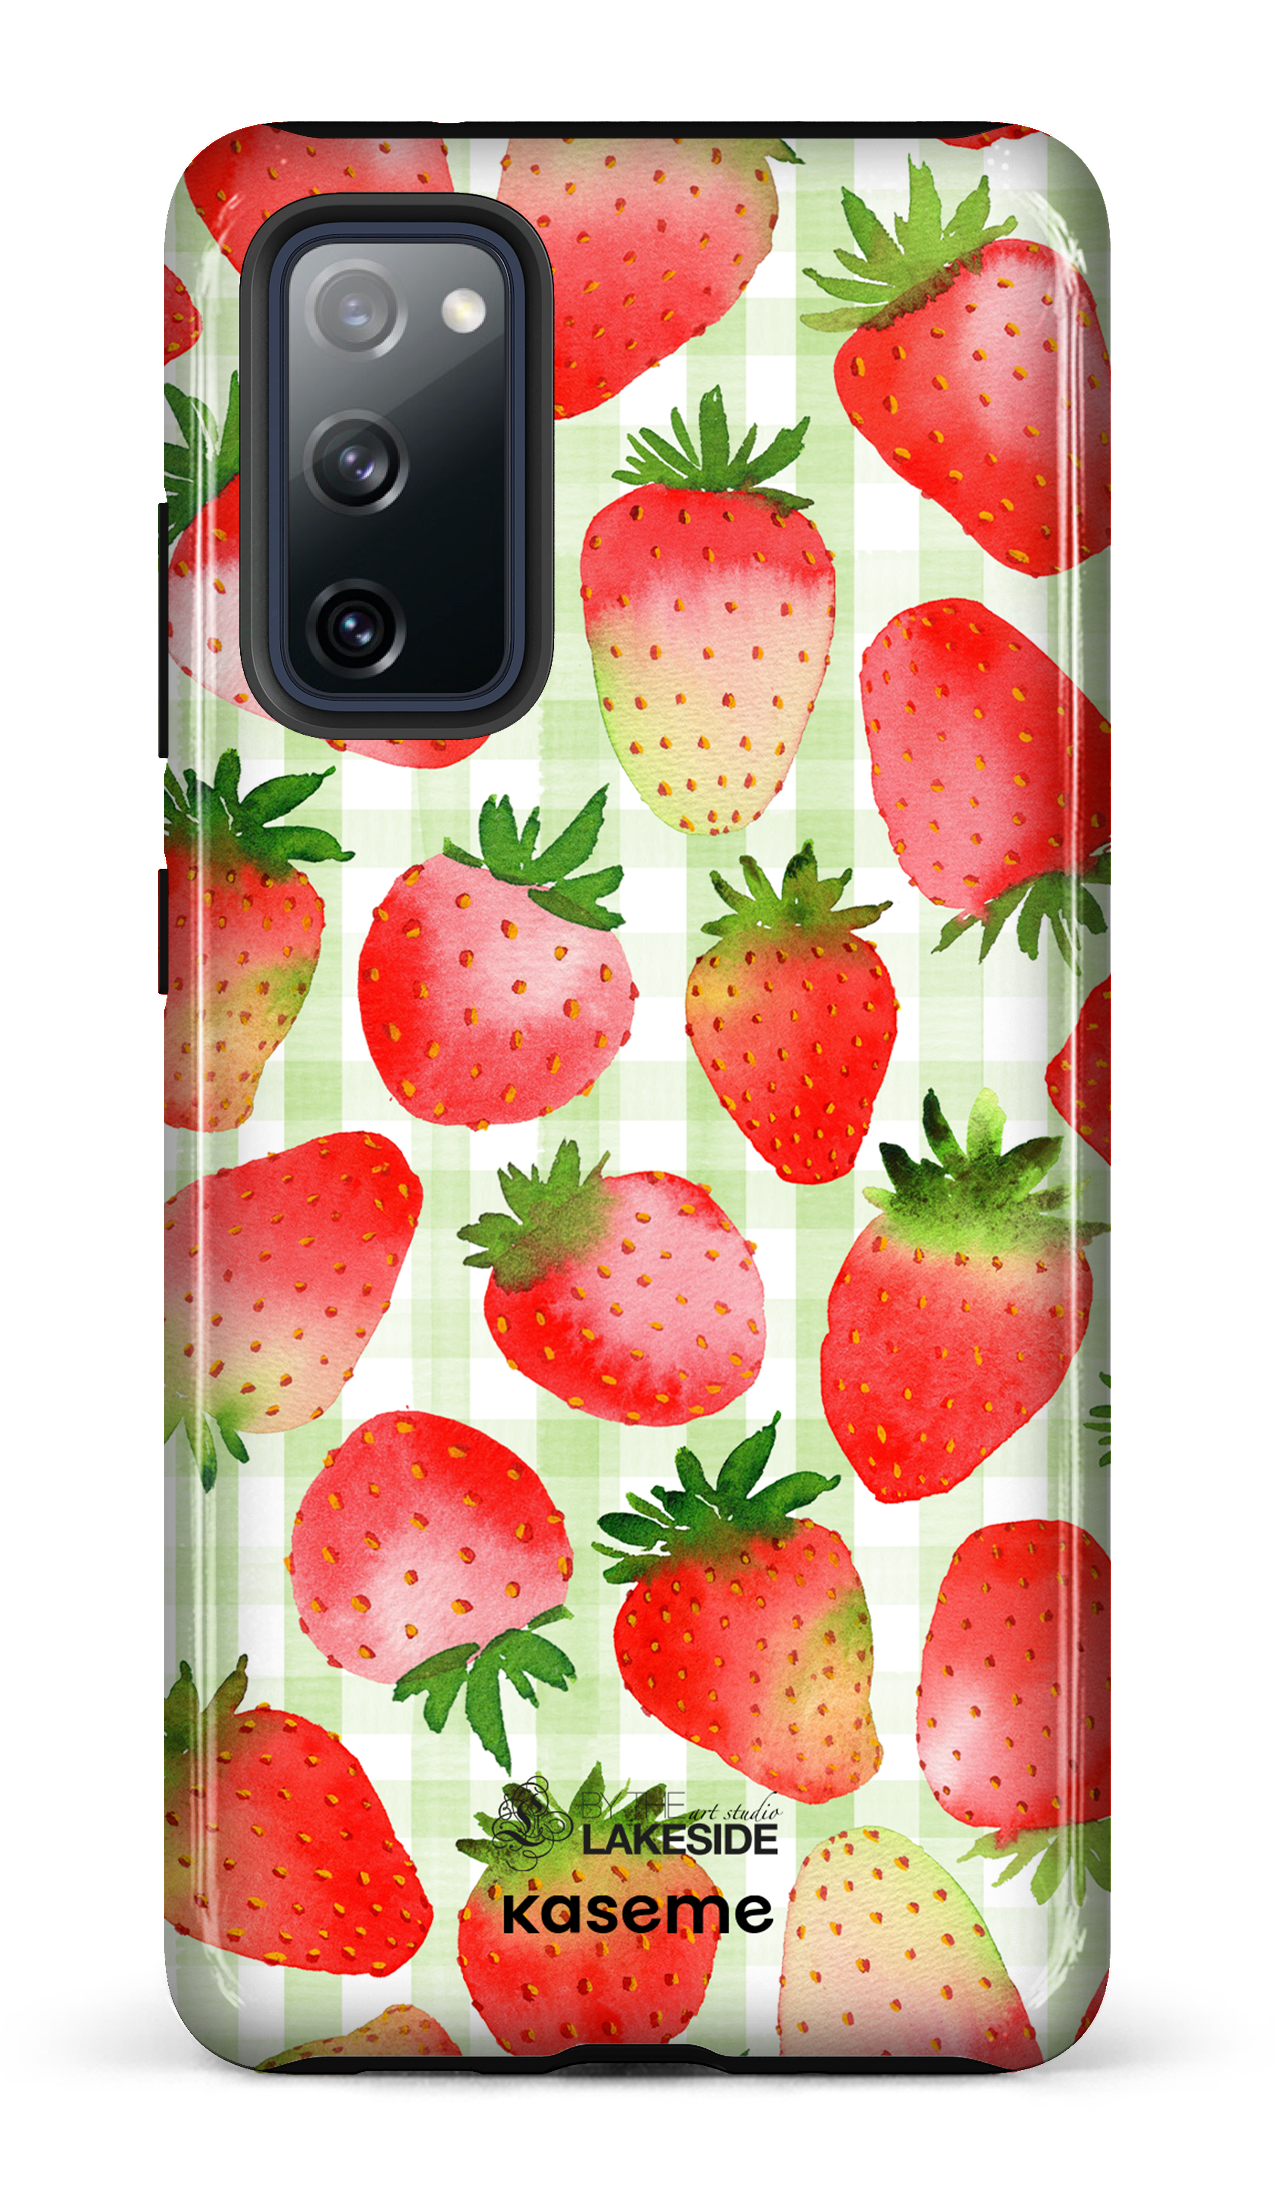 Strawberry Fields Green by Pooja Umrani - Galaxy S20 FE